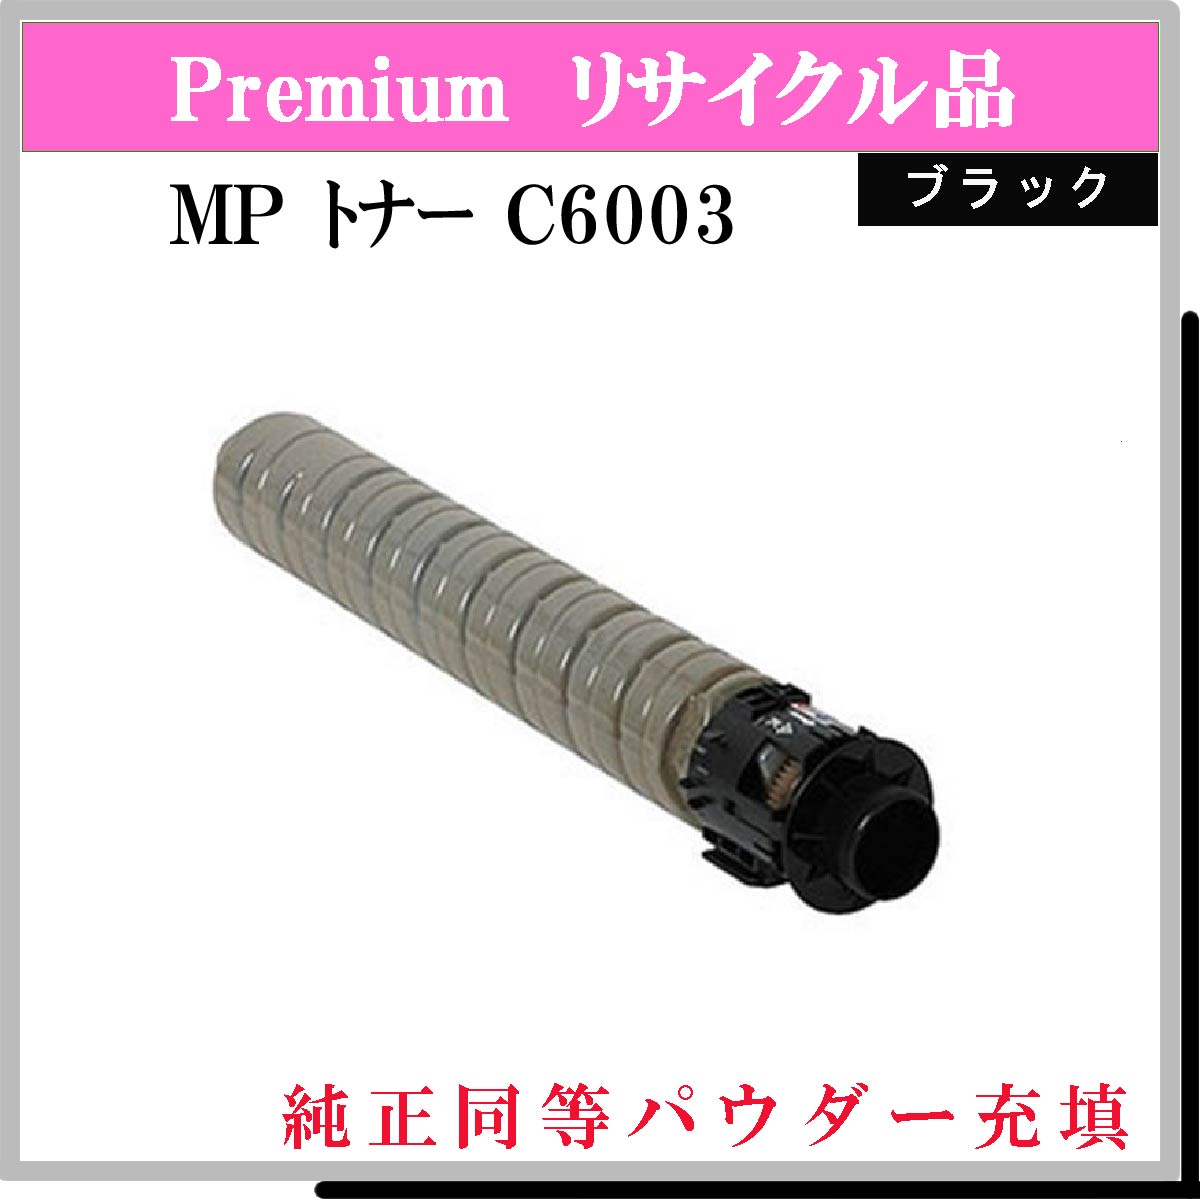 MP ﾄﾅｰ C6003 ﾌﾞﾗｯｸ (純正同等ﾊﾟｳﾀﾞｰ)